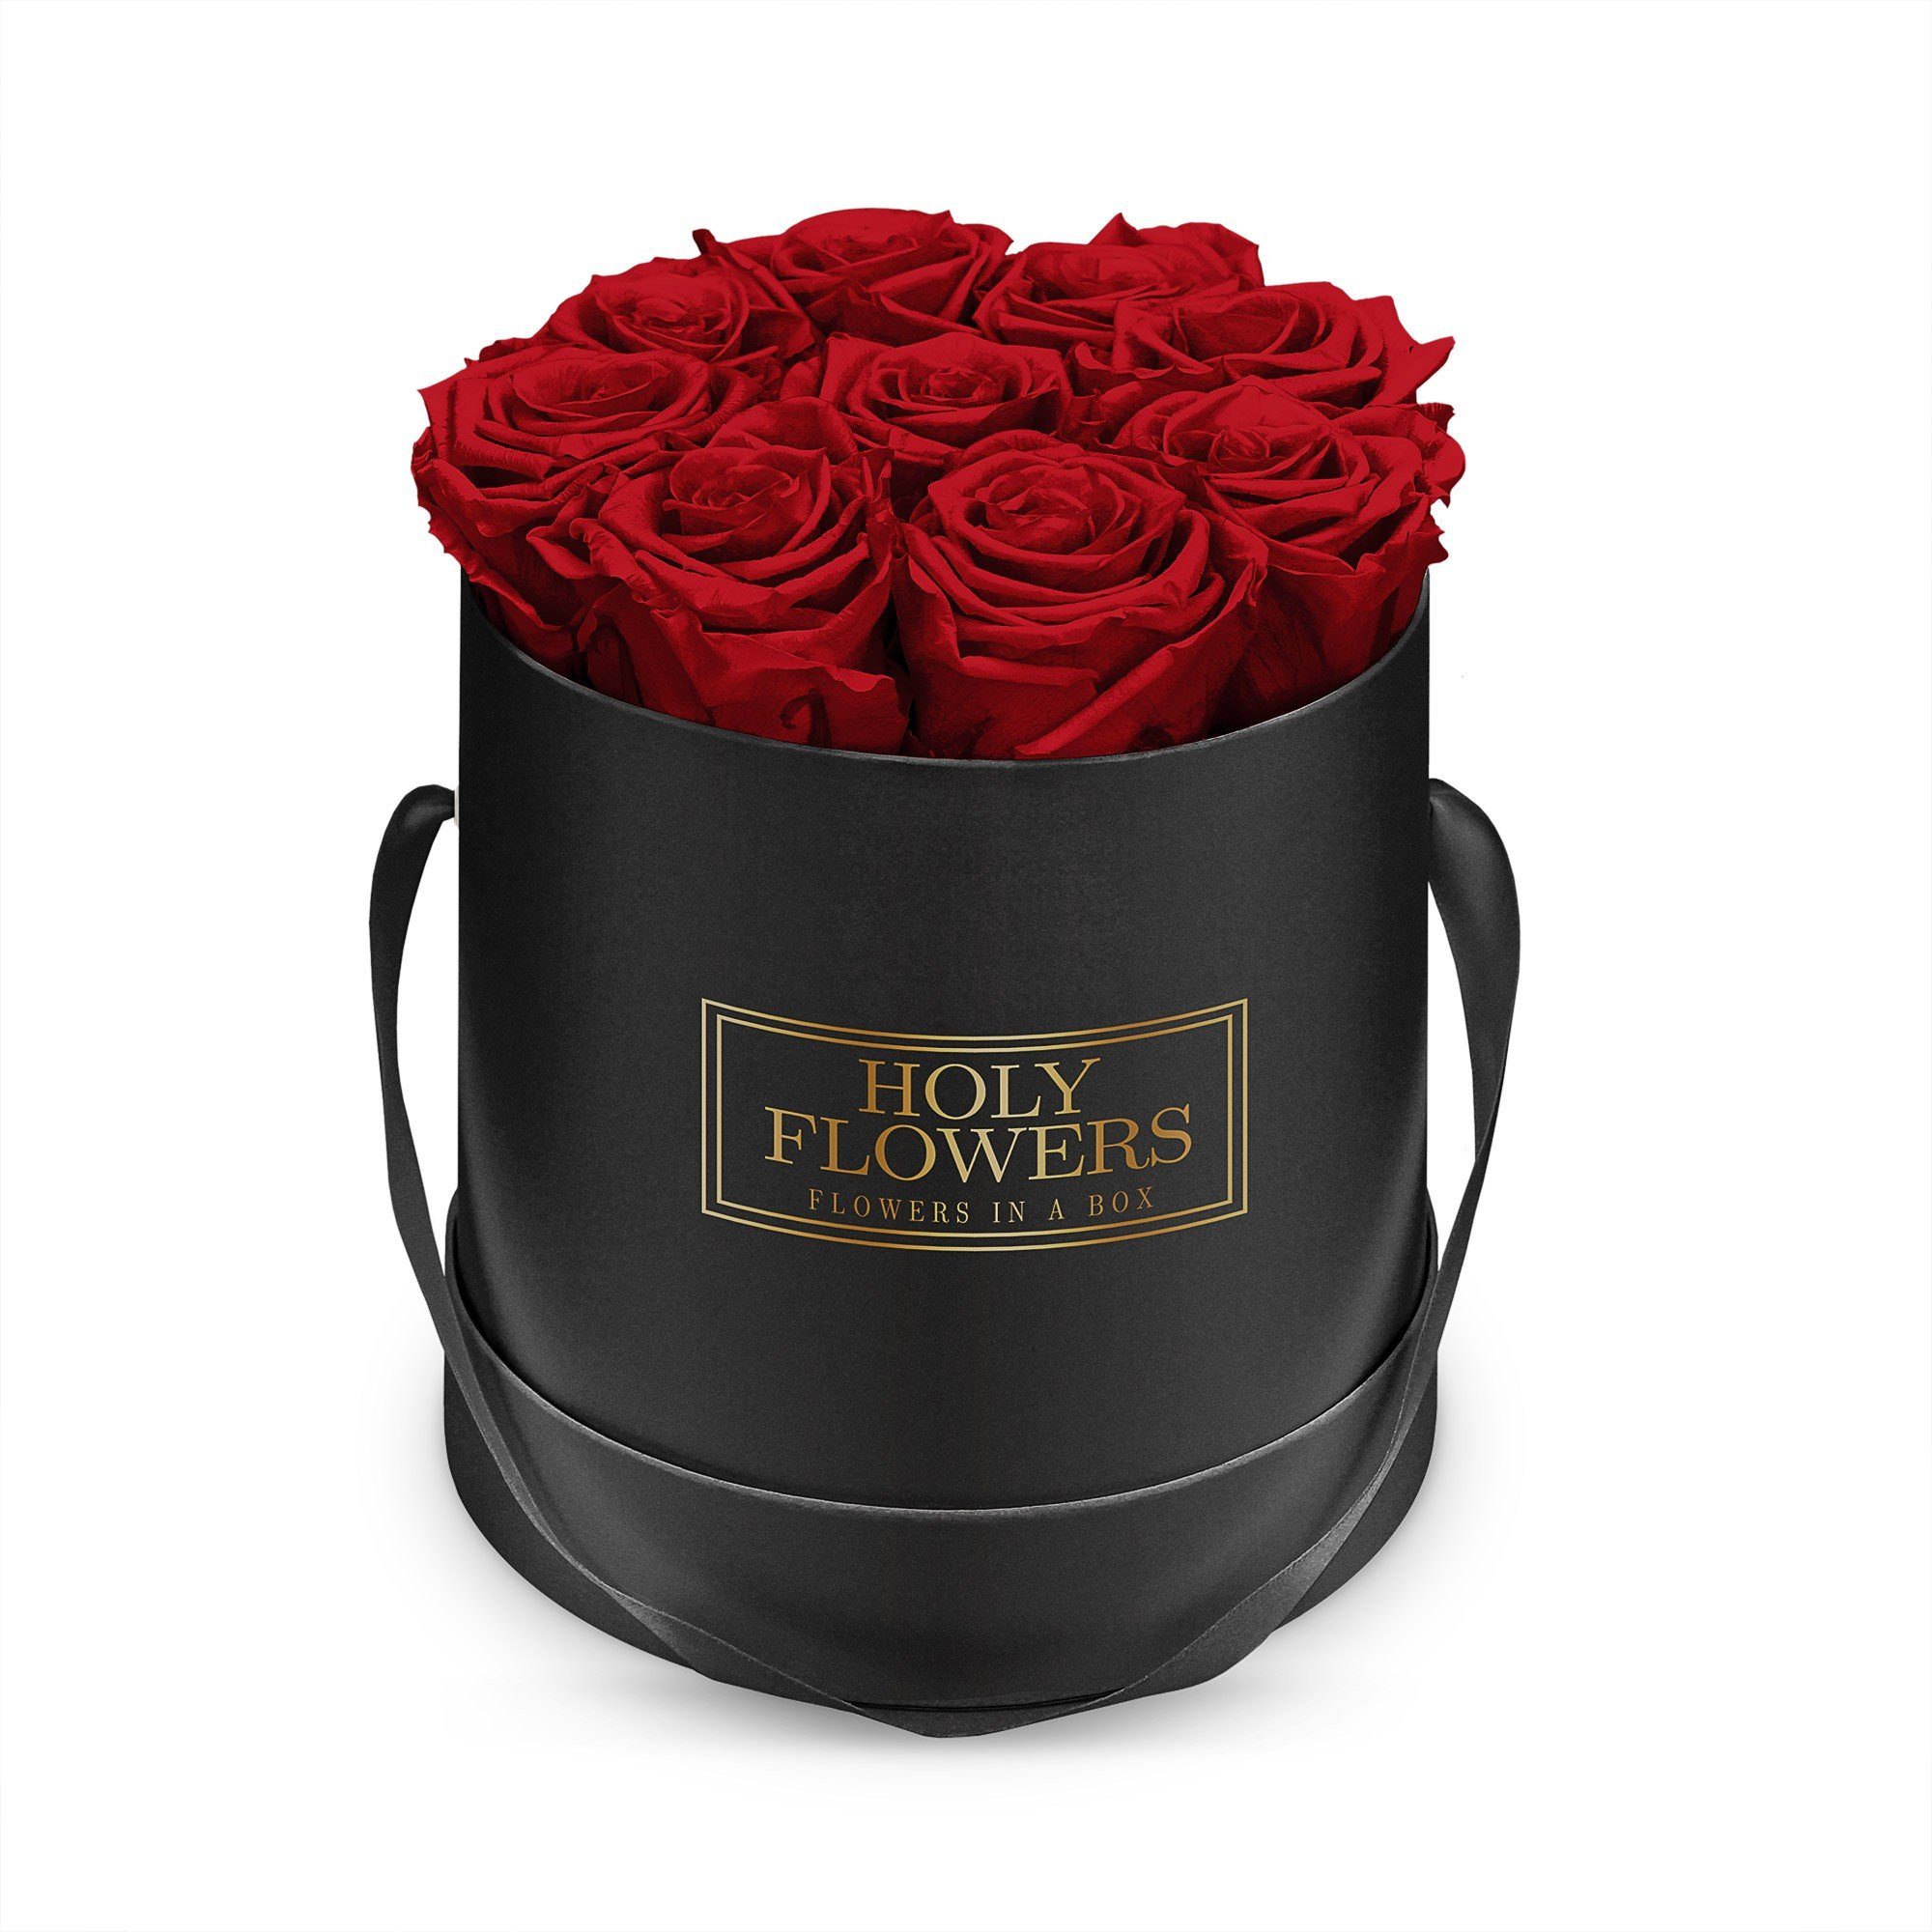 Kunstblume Runde Rosenbox in schwarz mit 8- 12 Infinity Rosen I 3 Jahre  haltbar I Echte, duftende konservierte Blumen I by Raul Richter Infinity  Rose, Holy Flowers, Höhe 14 cm